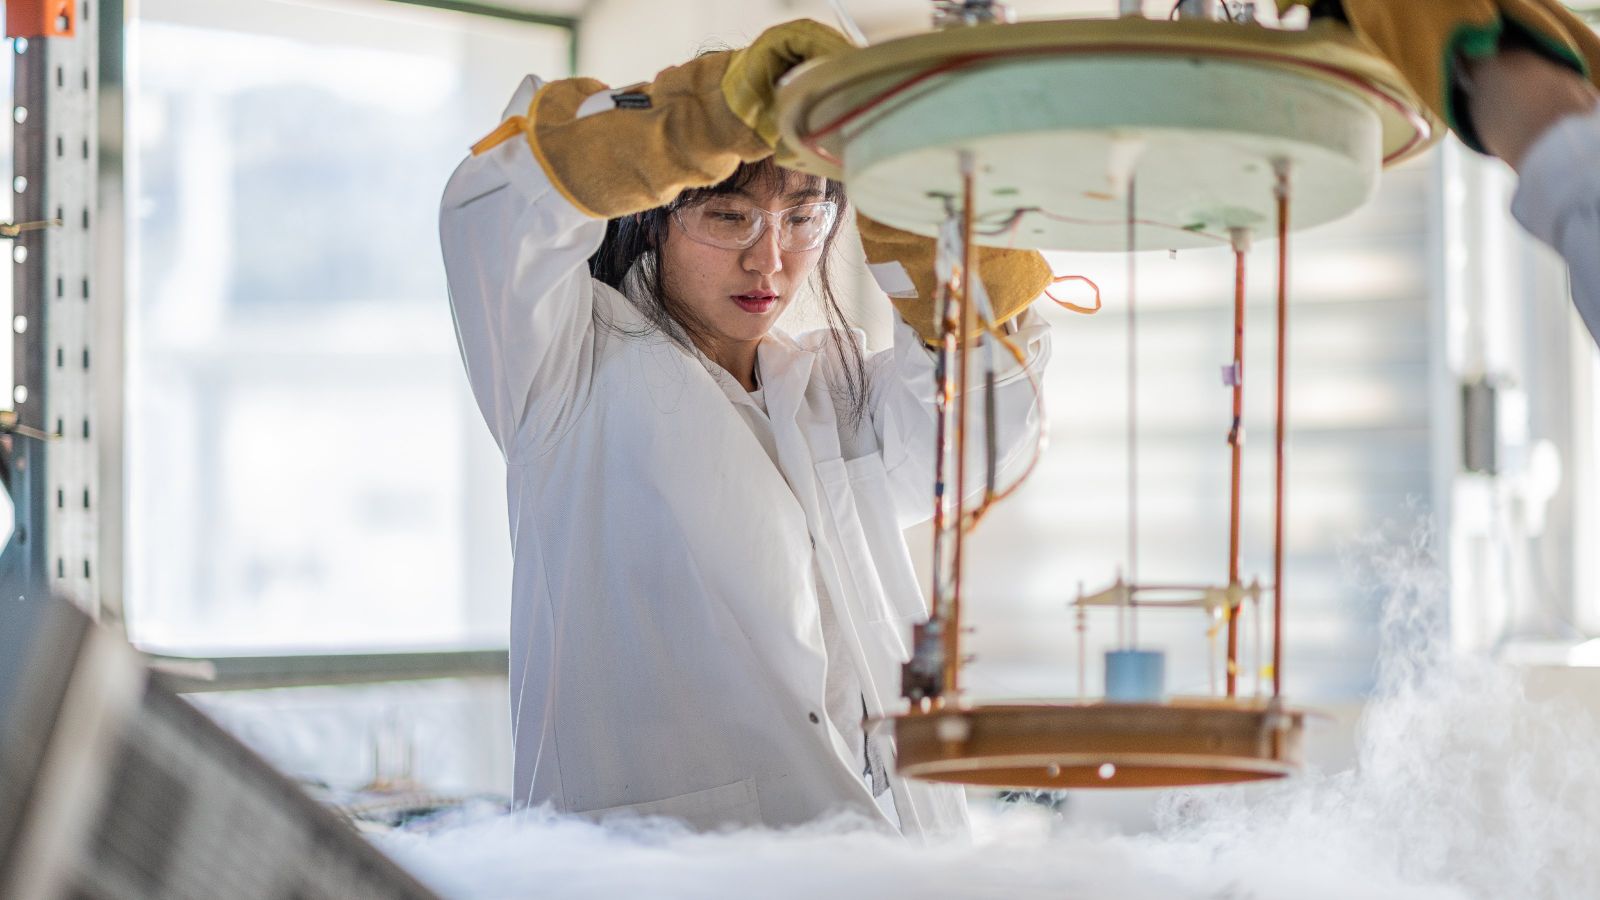 Female scientist lowering equipment into a vat of liquid nitrogen.